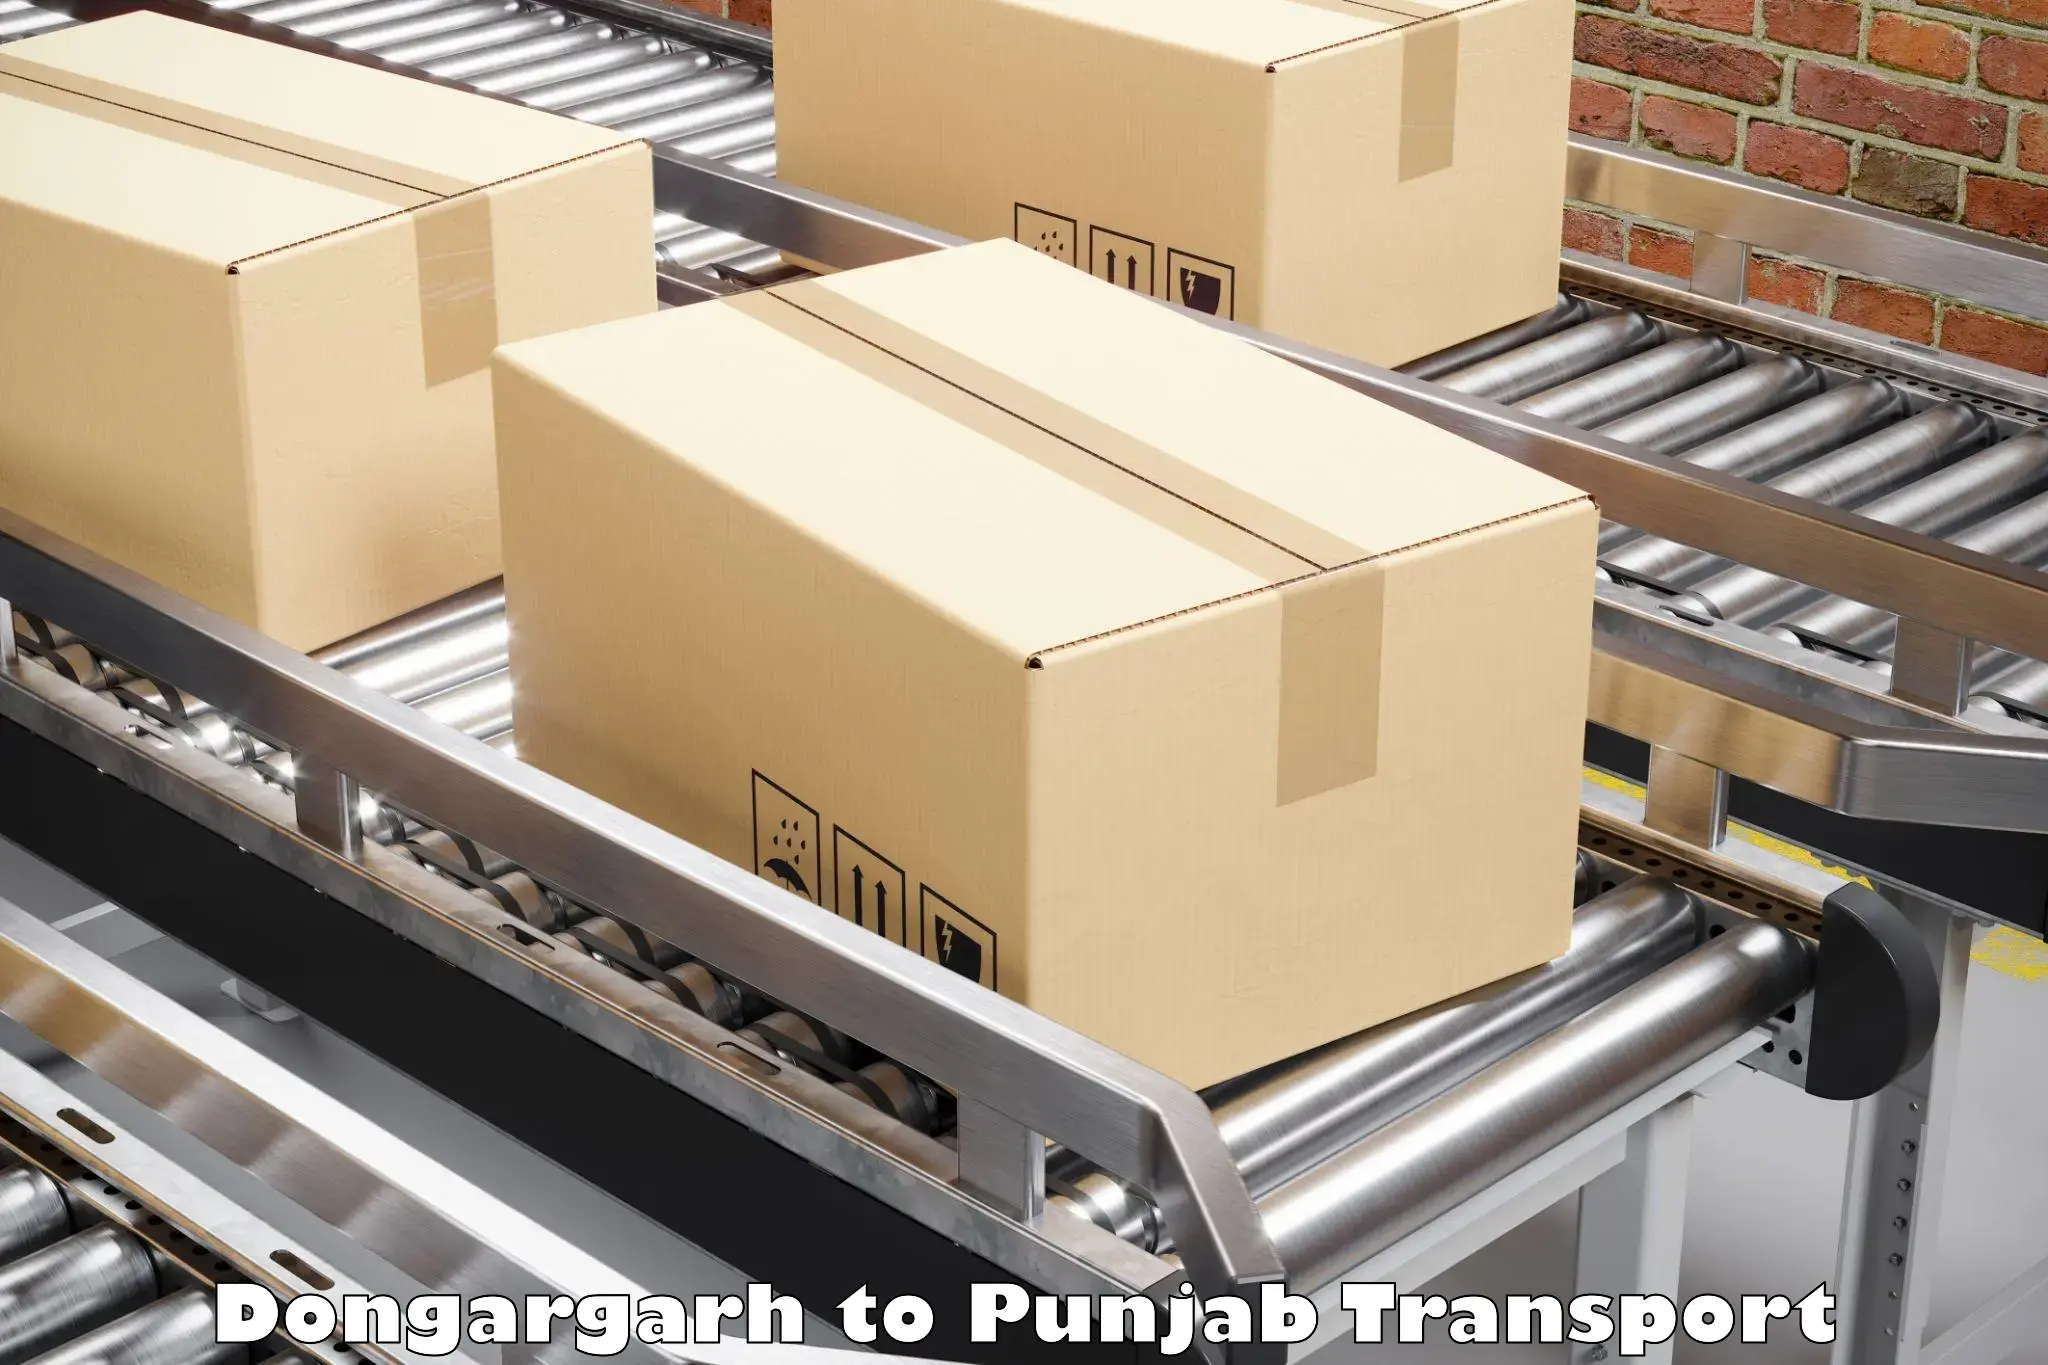 Transport services Dongargarh to Punjab